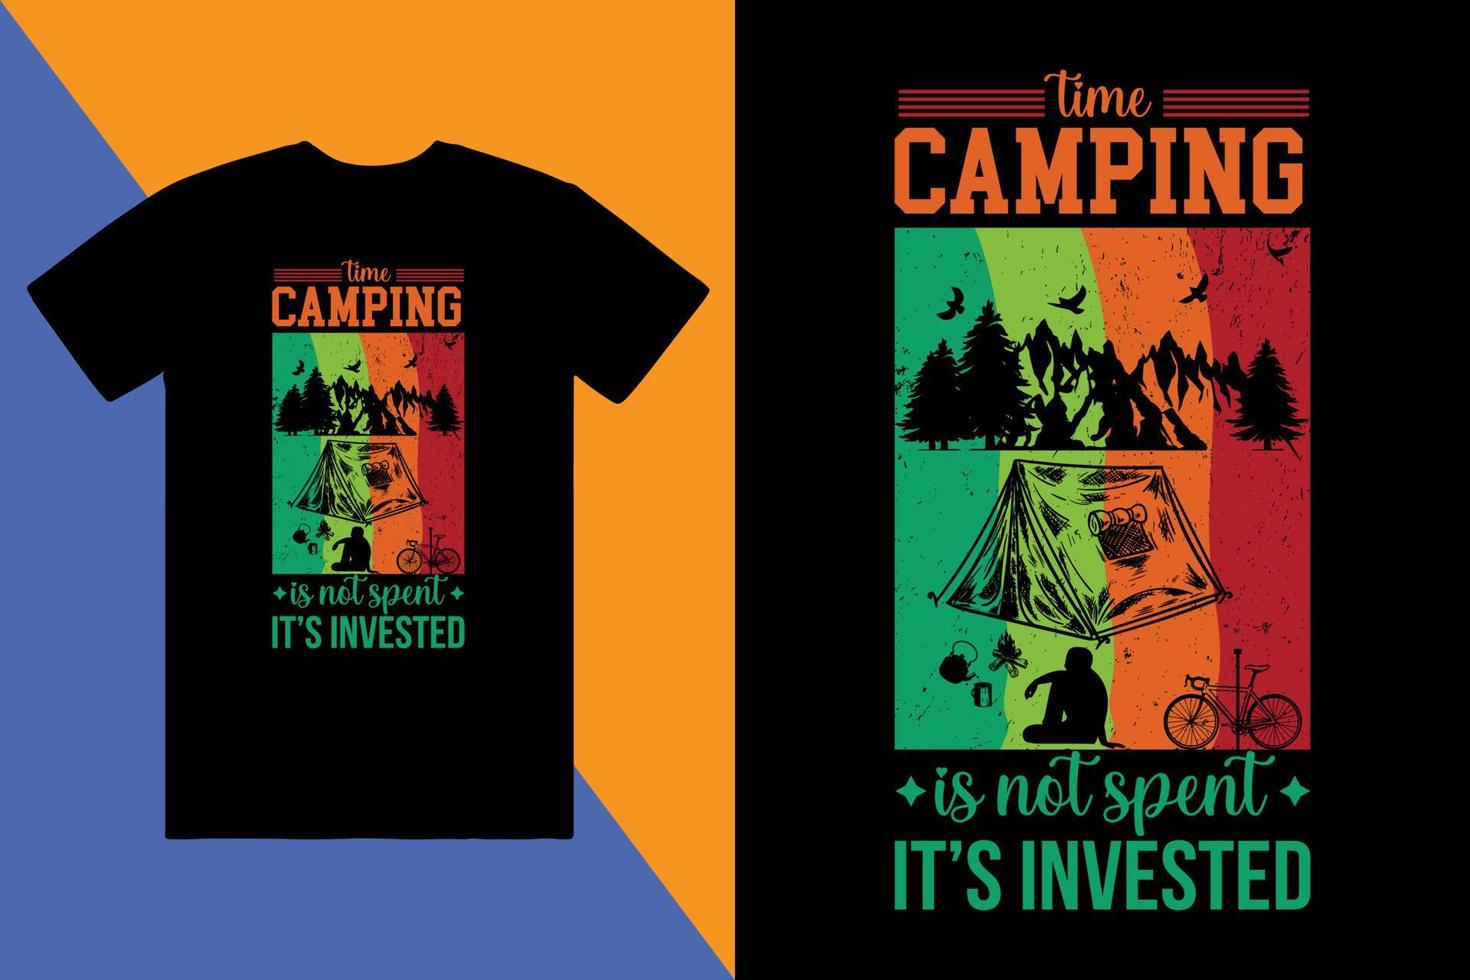 creative adventure, mountain, outdoor, camping, custom logo tshirt design vector